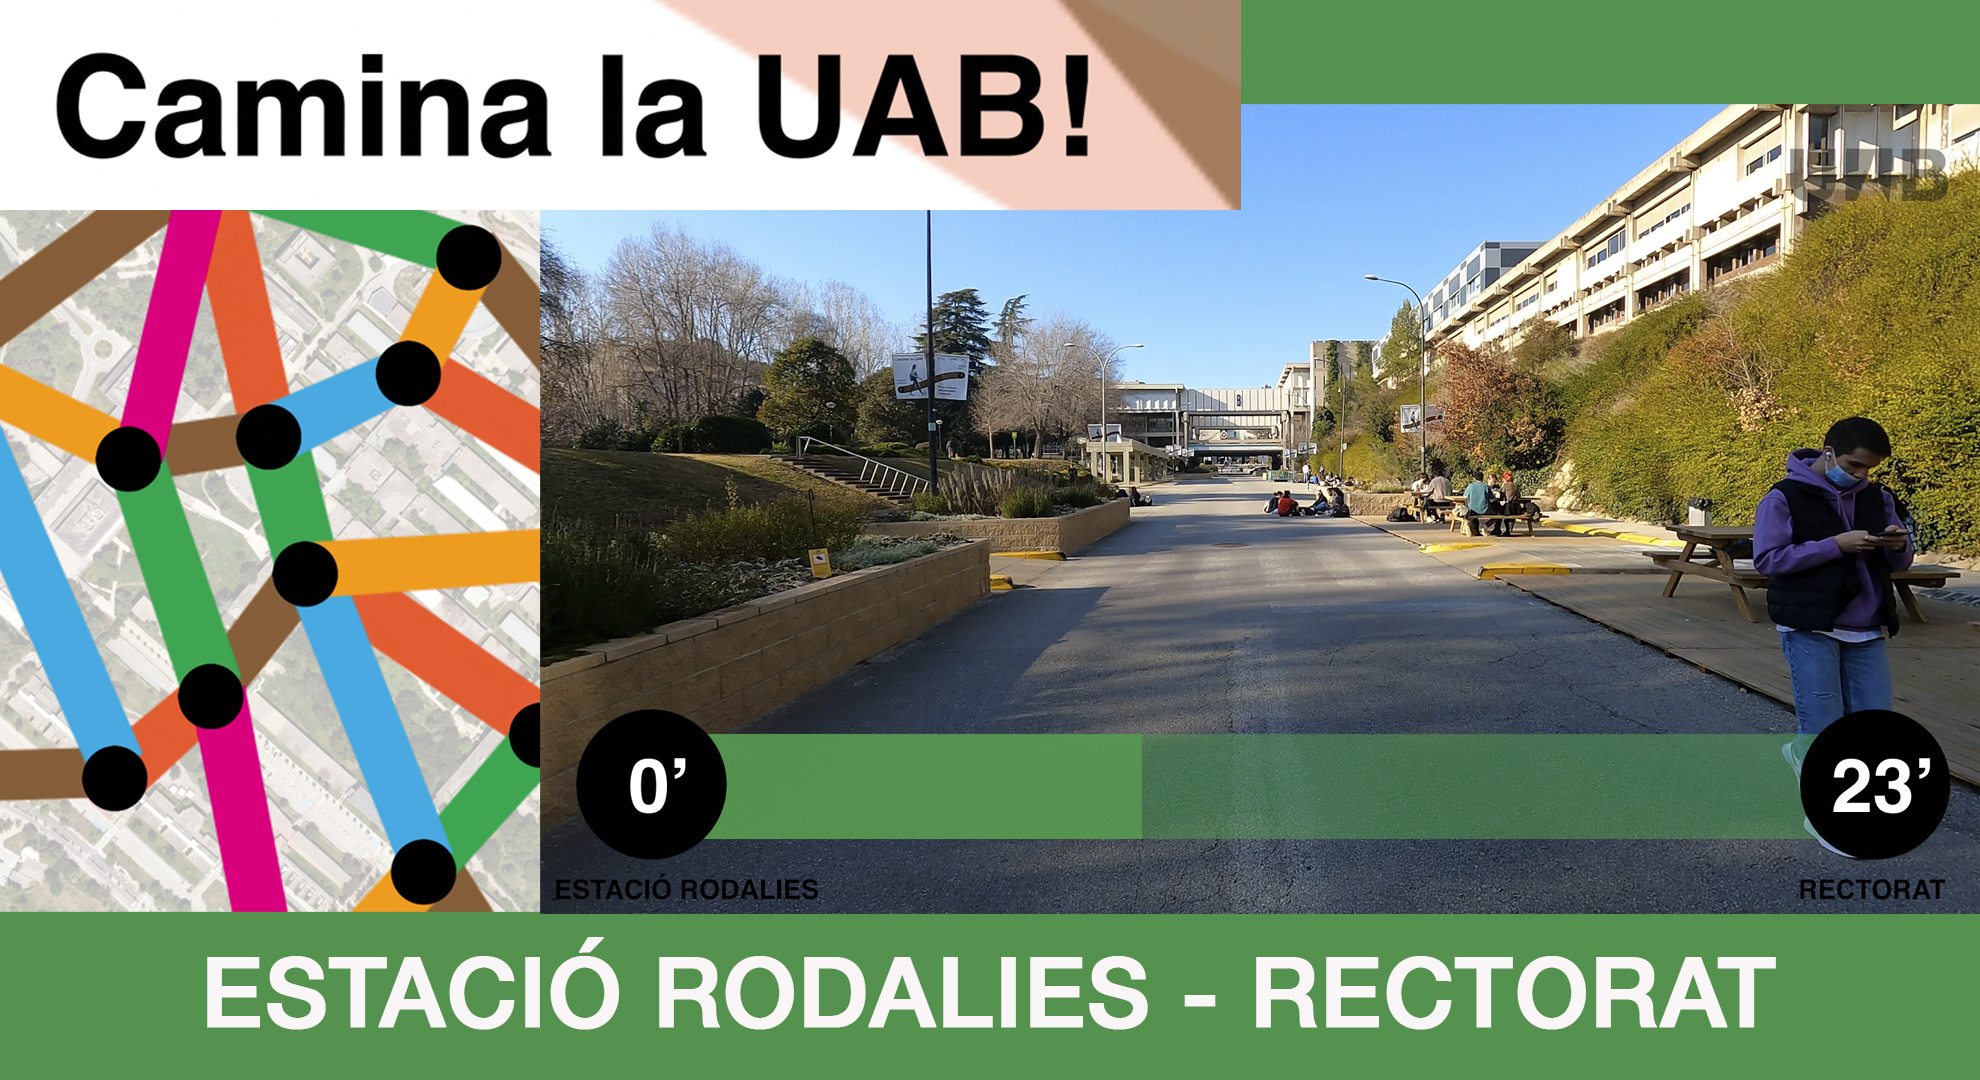 IMG_CaminalaUAB_Rodalies_Rectorat